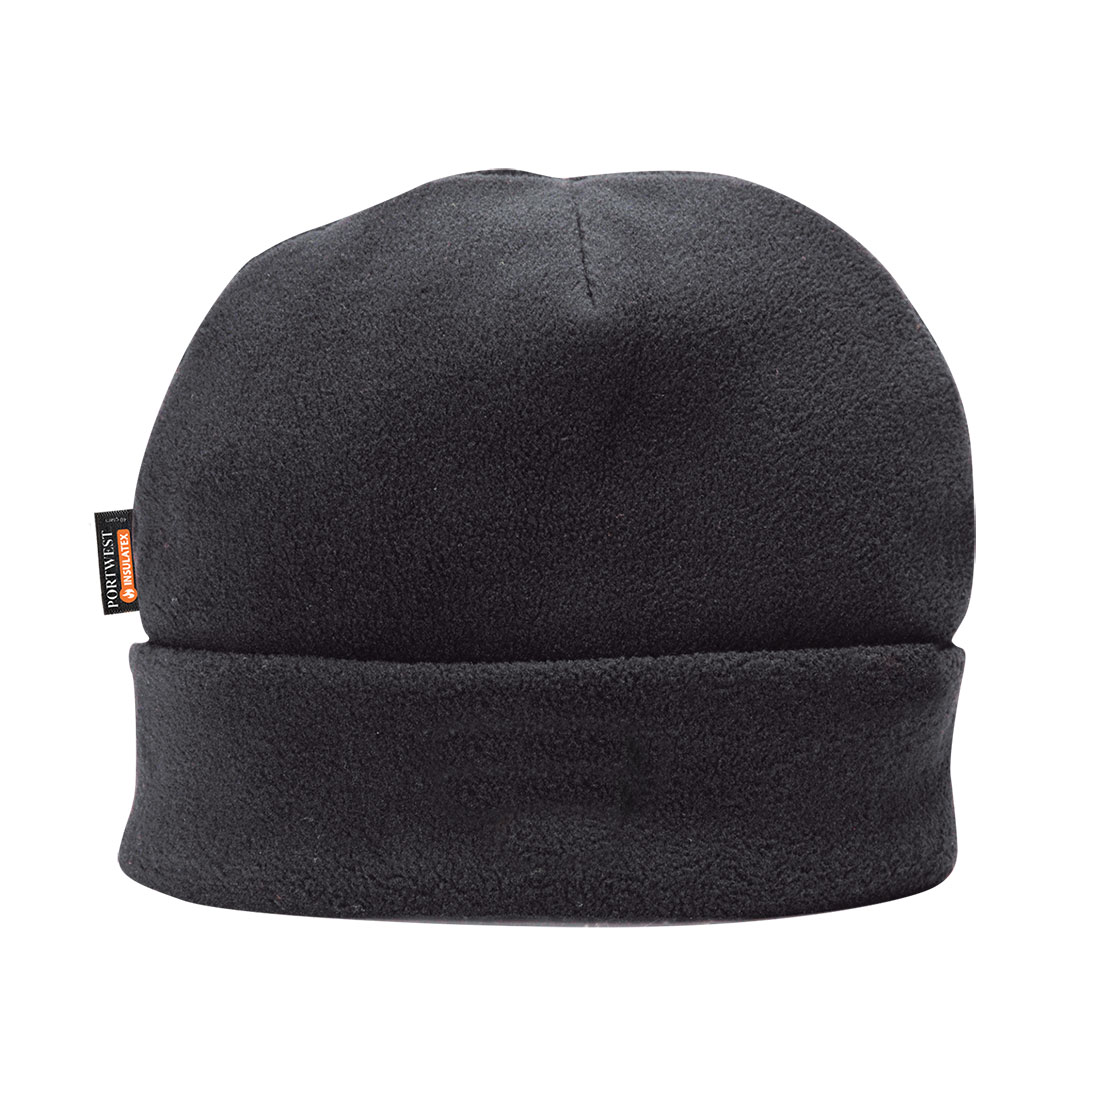 Fleece Hat Insulatex Lined